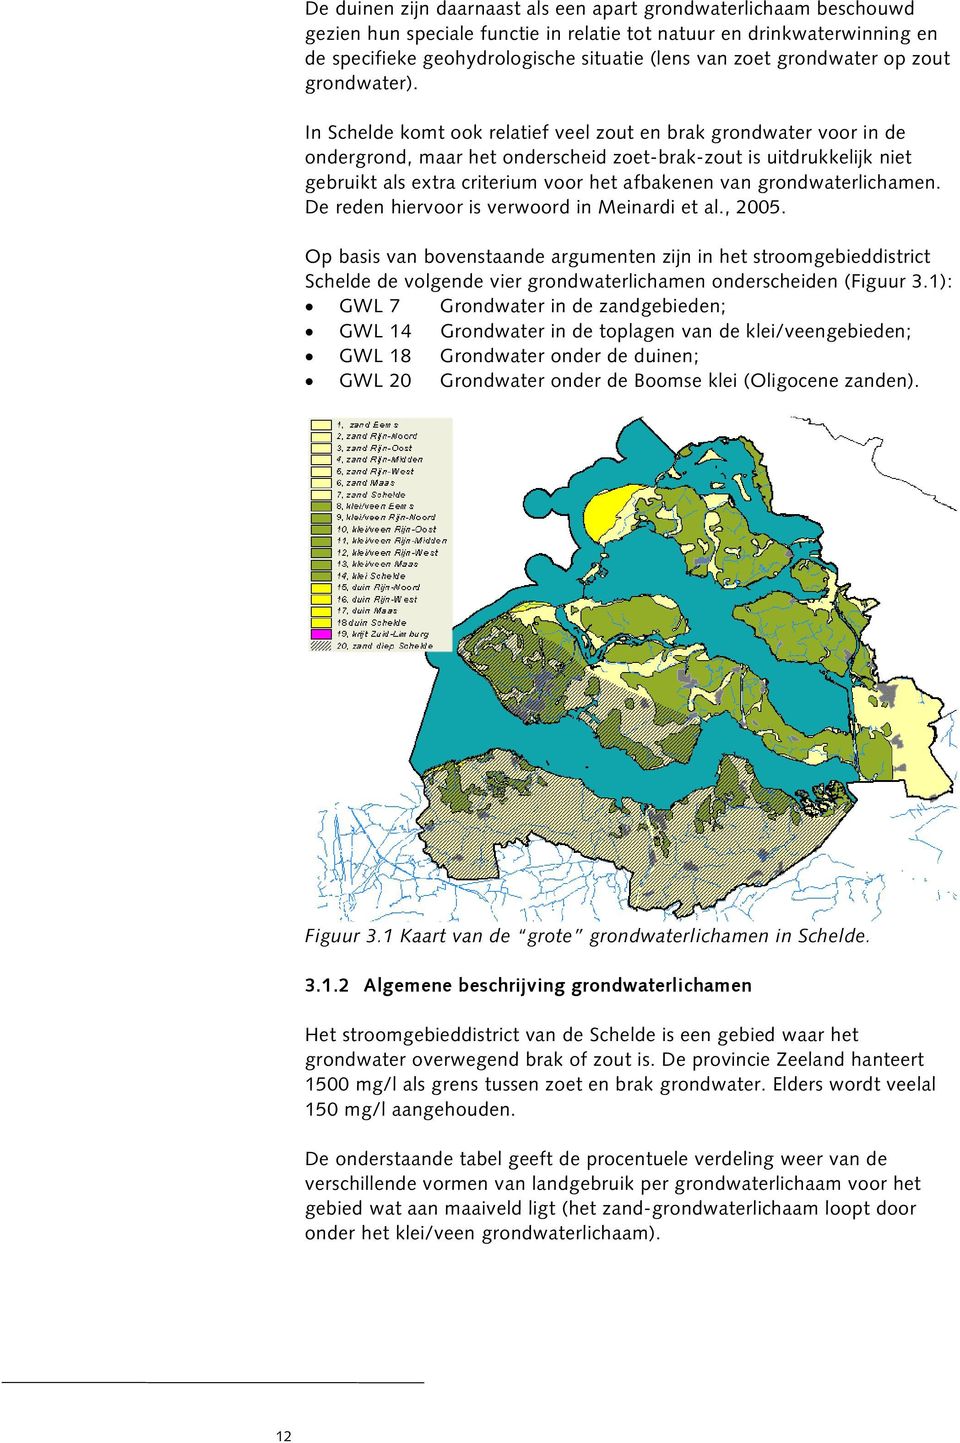 In Schelde komt ook relatief veel zout en brak grondwater voor in de ondergrond, maar het onderscheid zoet-brak-zout is uitdrukkelijk niet gebruikt als extra criterium voor het afbakenen van